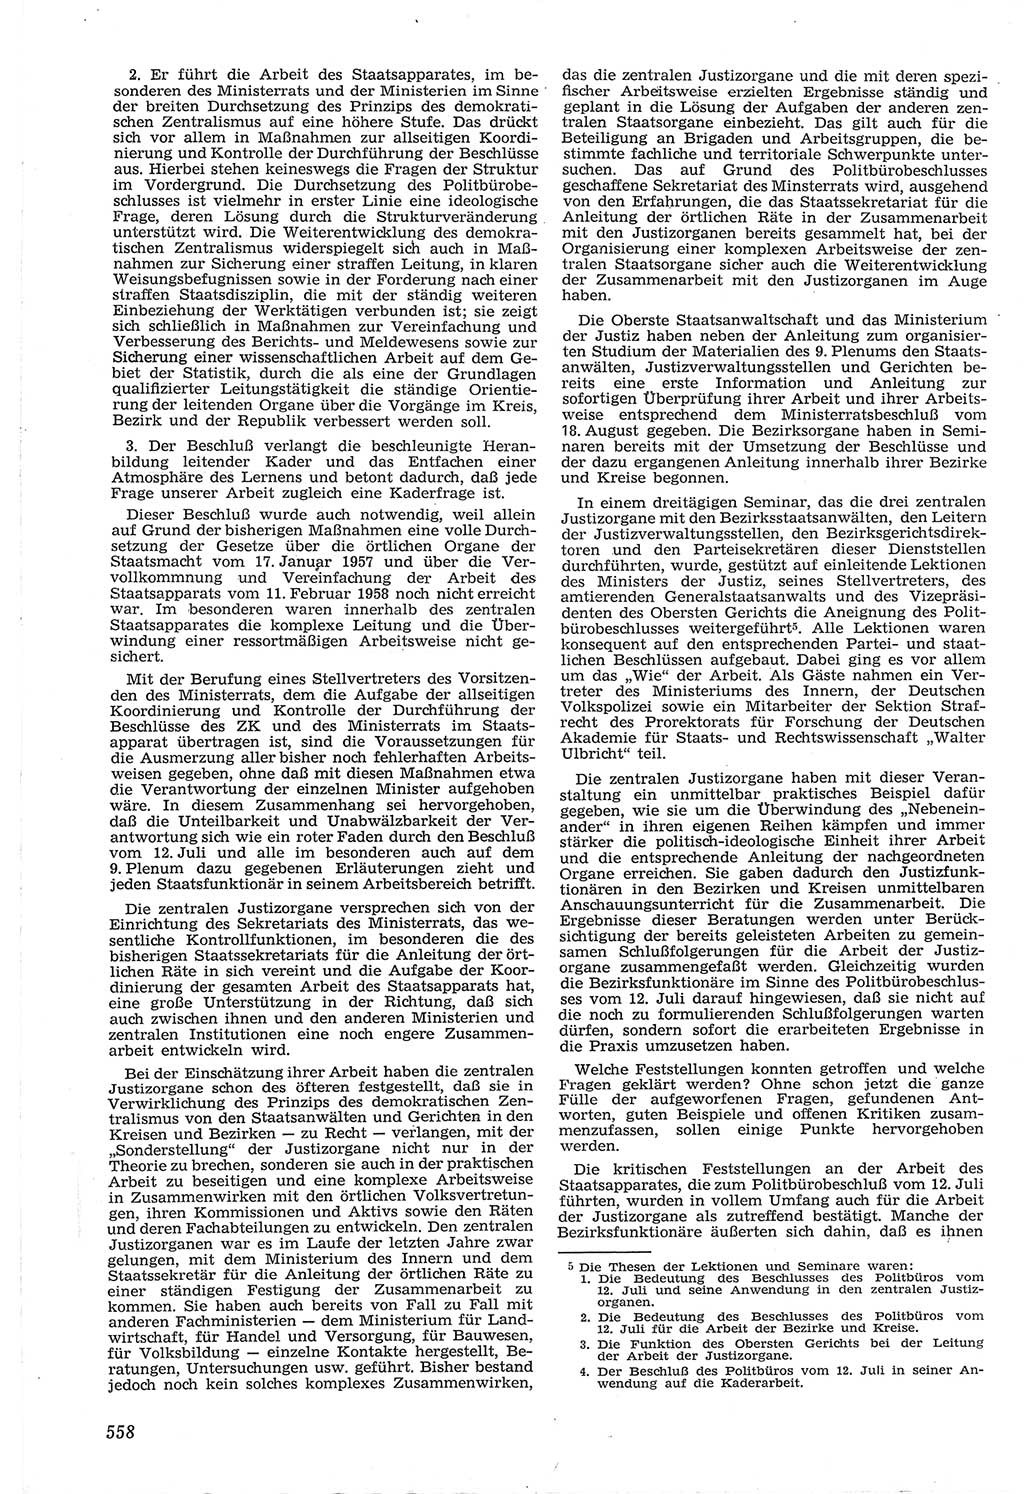 Neue Justiz (NJ), Zeitschrift für Recht und Rechtswissenschaft [Deutsche Demokratische Republik (DDR)], 14. Jahrgang 1960, Seite 558 (NJ DDR 1960, S. 558)